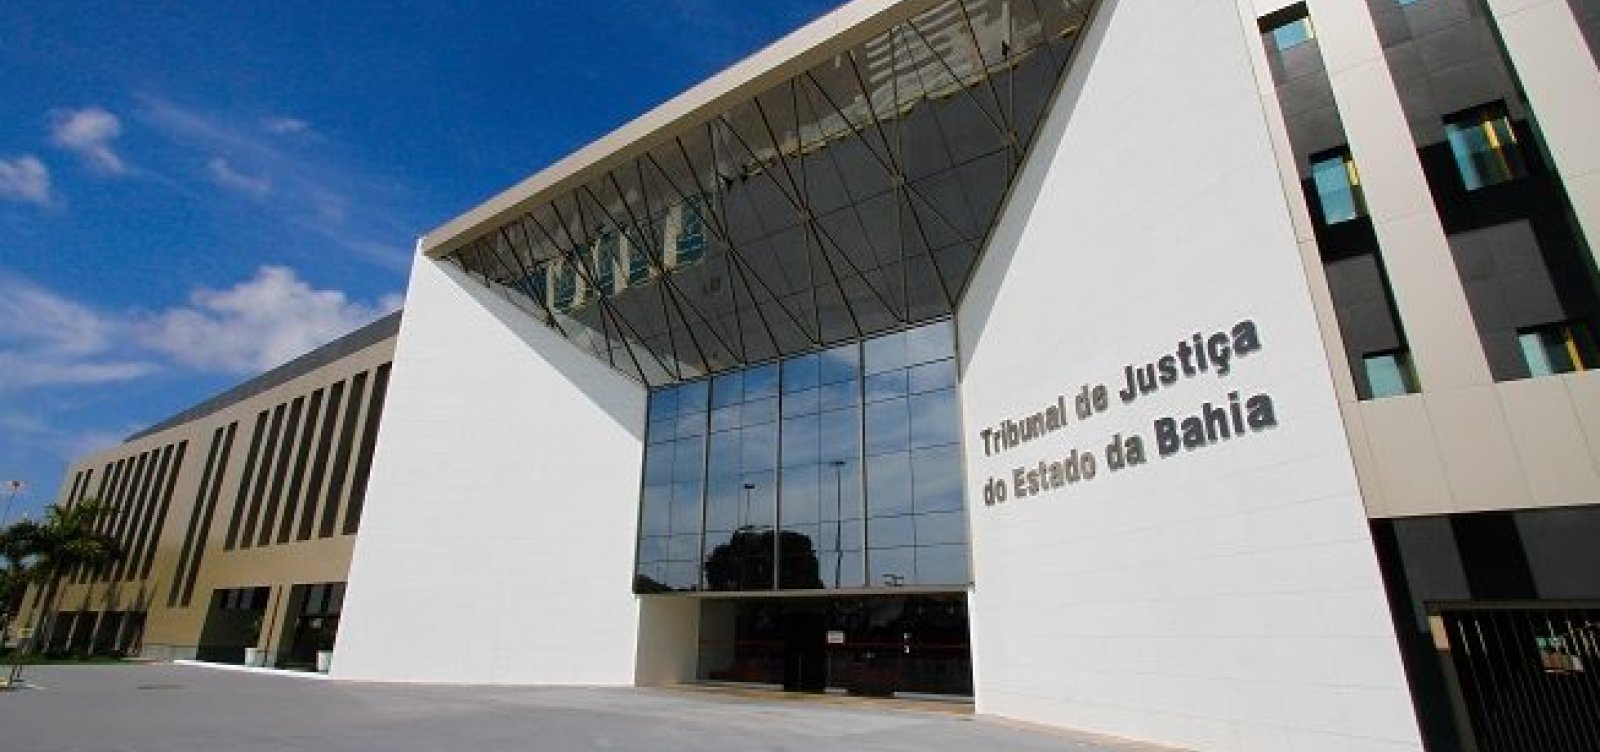 Empresário que matou funcionário em Brumado, na Bahia, é condenado a 16 anos de prisão 